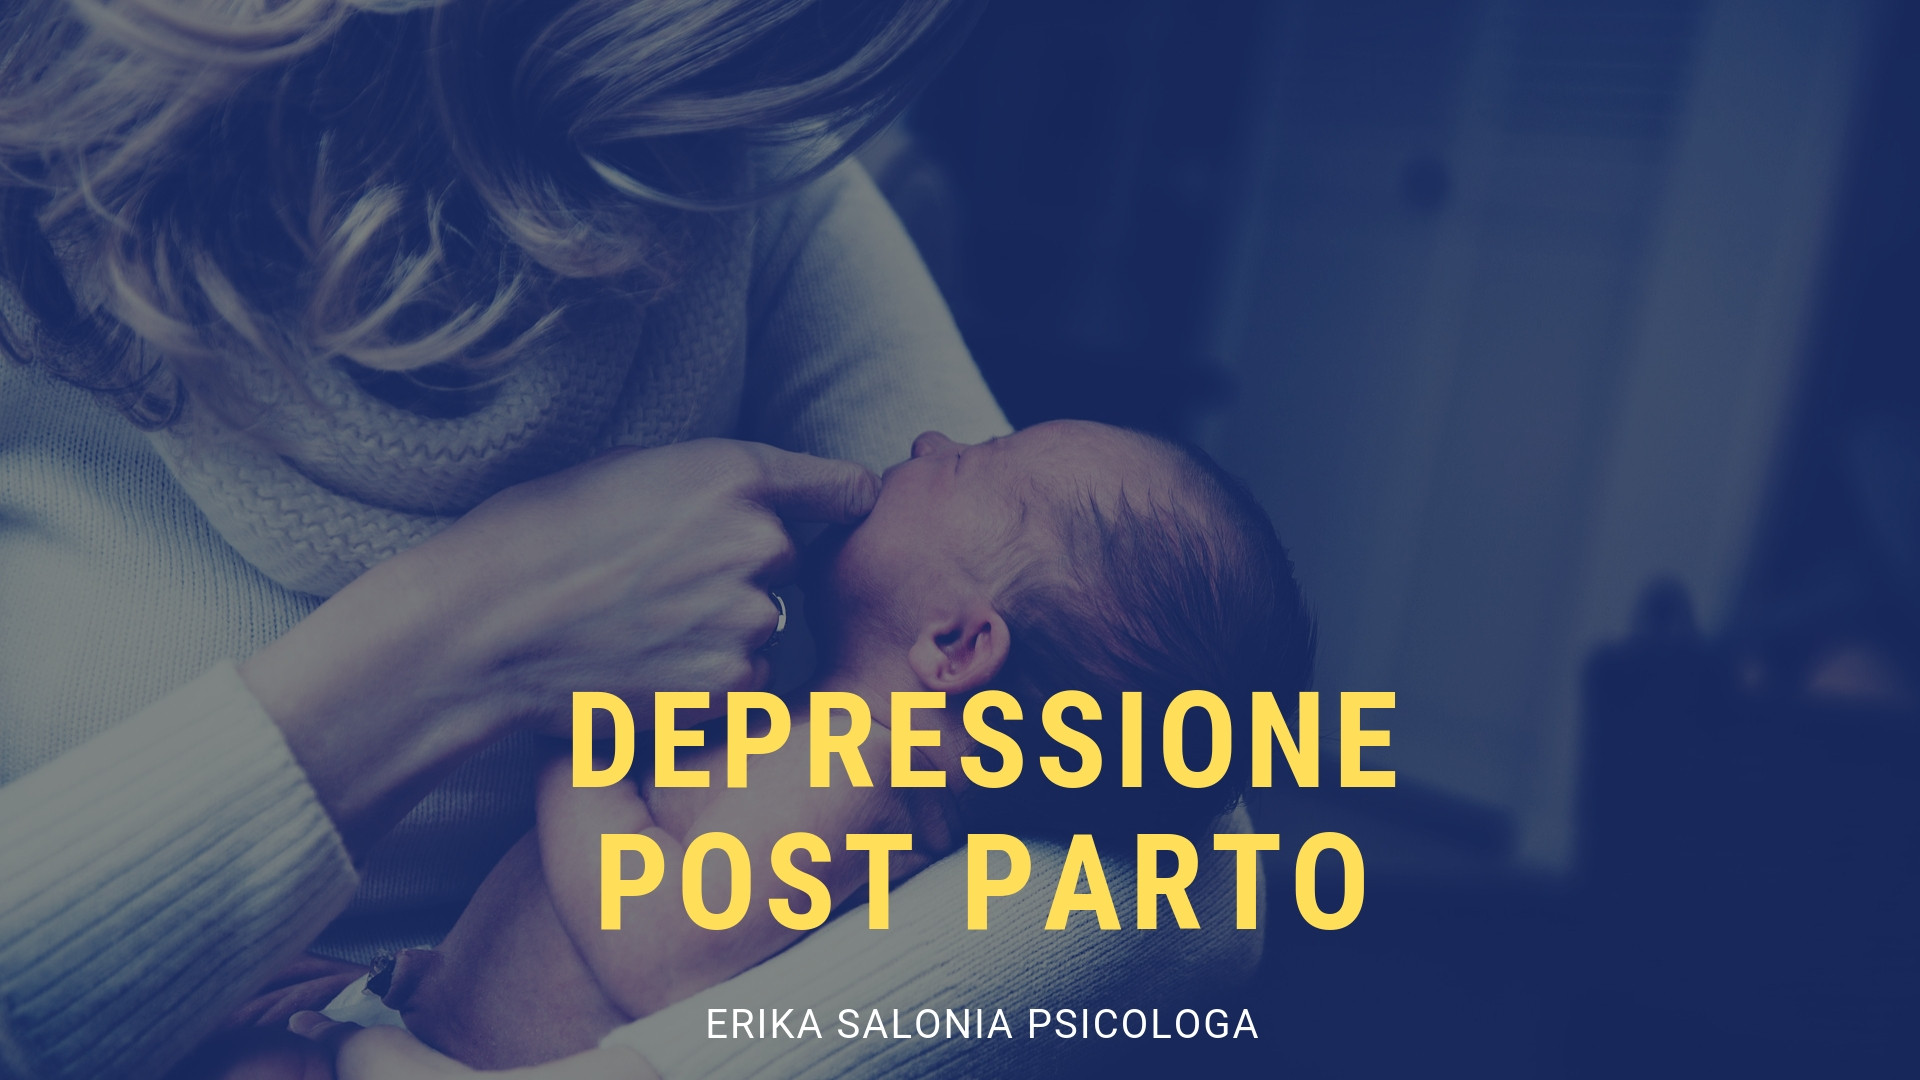 depressione post parto (Erika Salonia Psicologa)